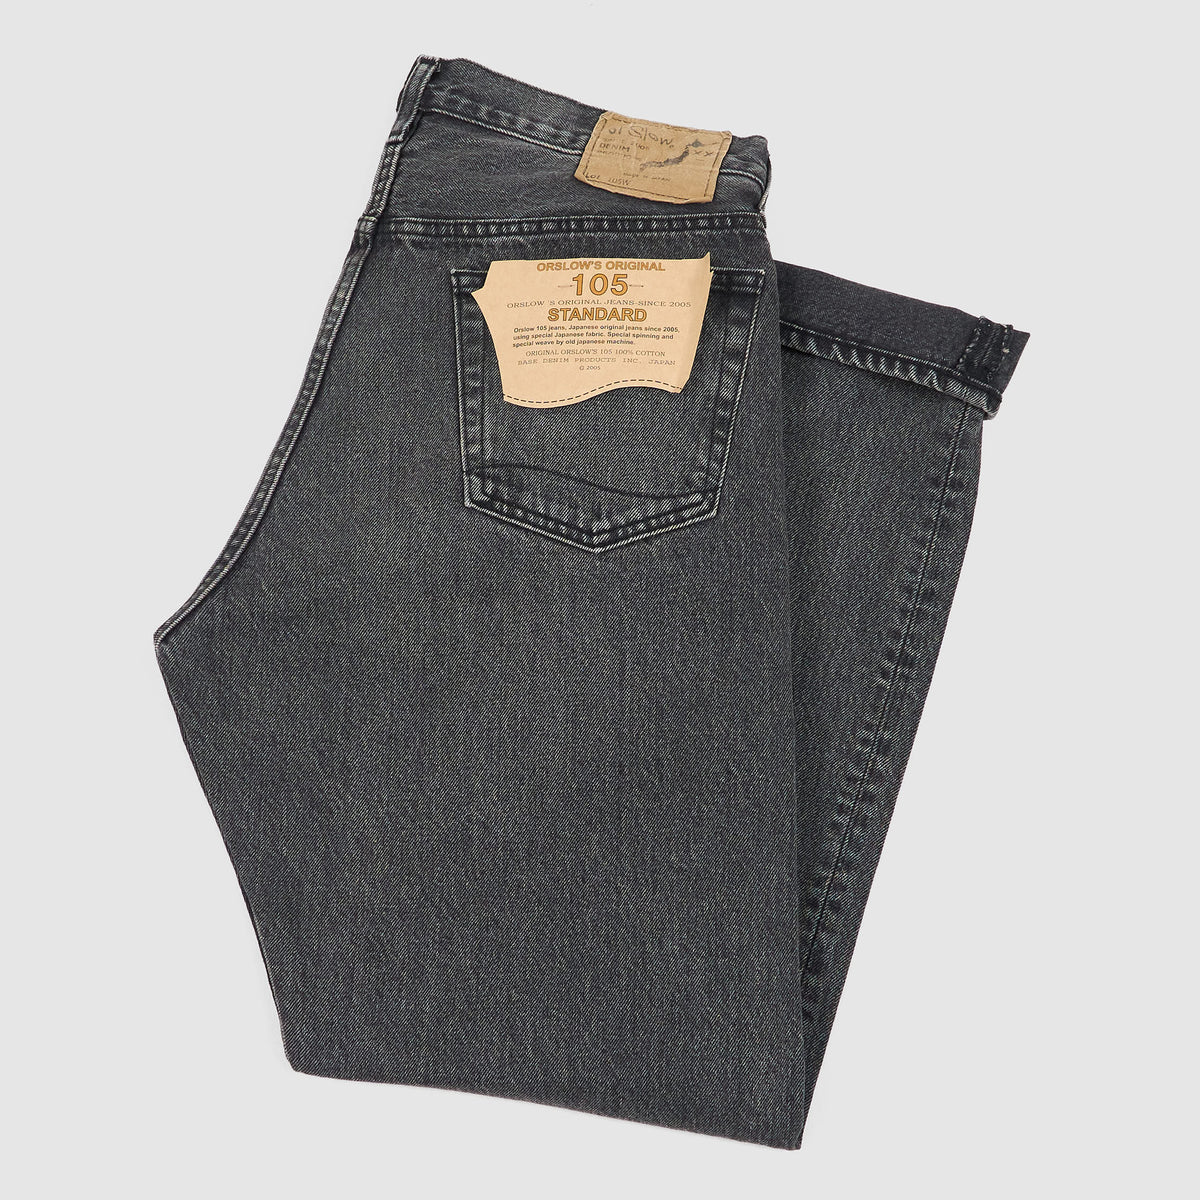 OrSlow 5-Pocket 105 Denim Jeans